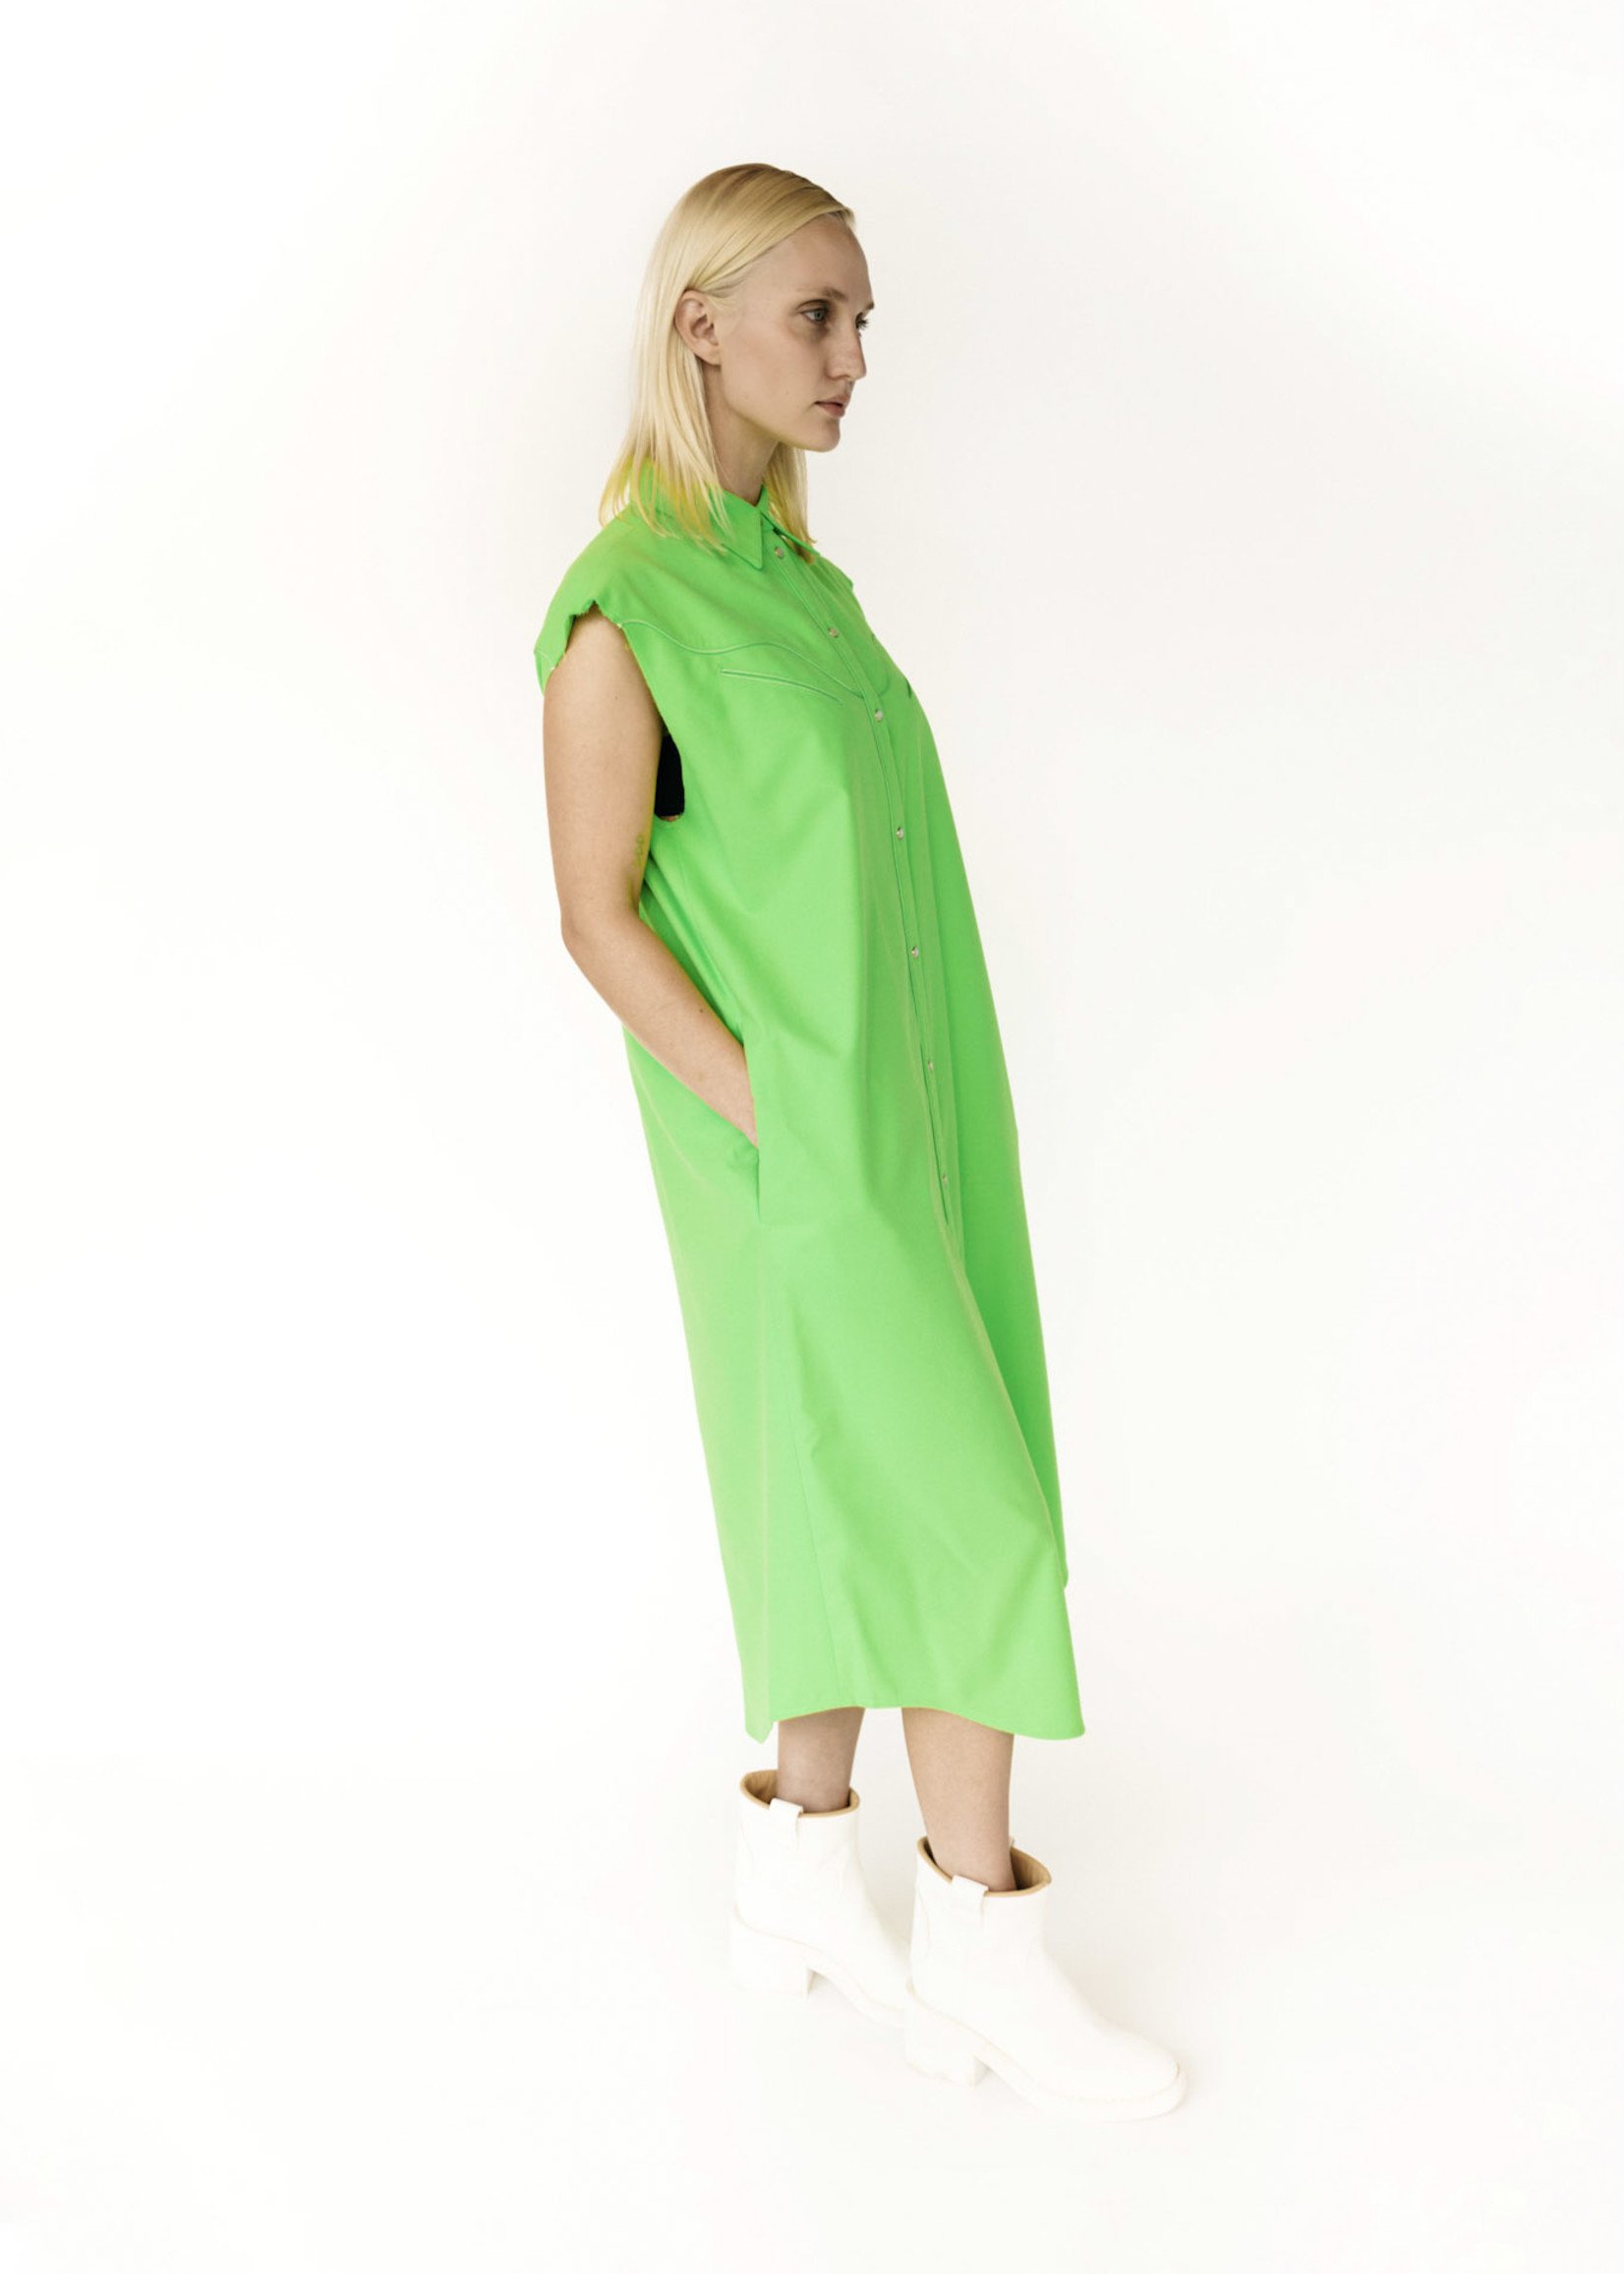 MM6 MAISON MARGIELA Neon Green Western Sleeveless Shirt Dress